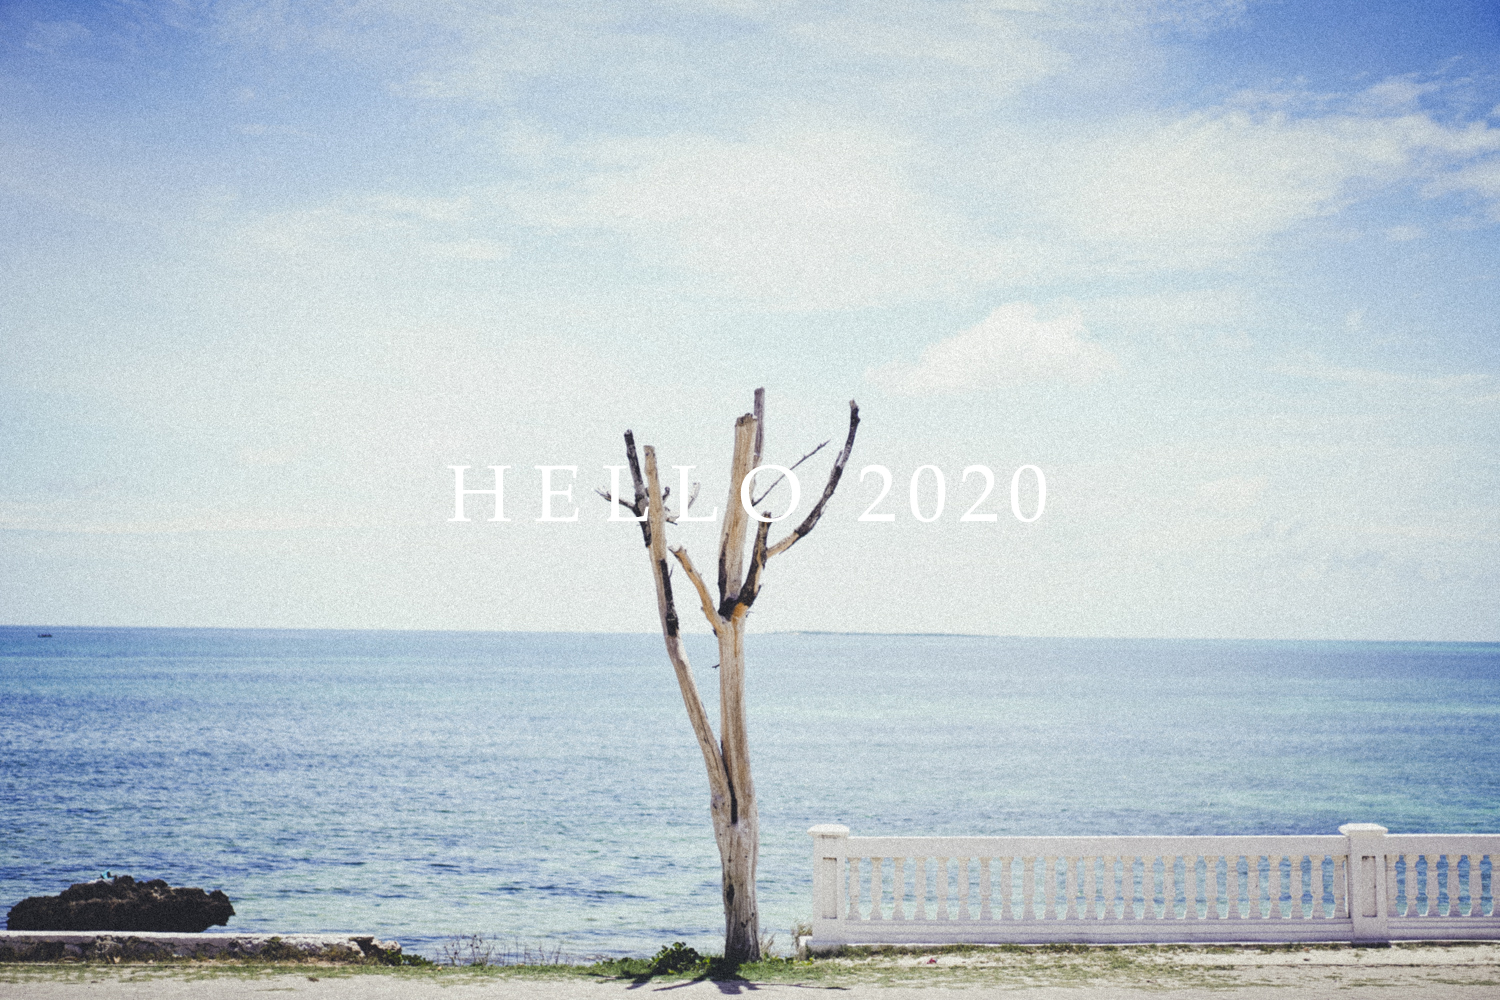 HELLO 2020